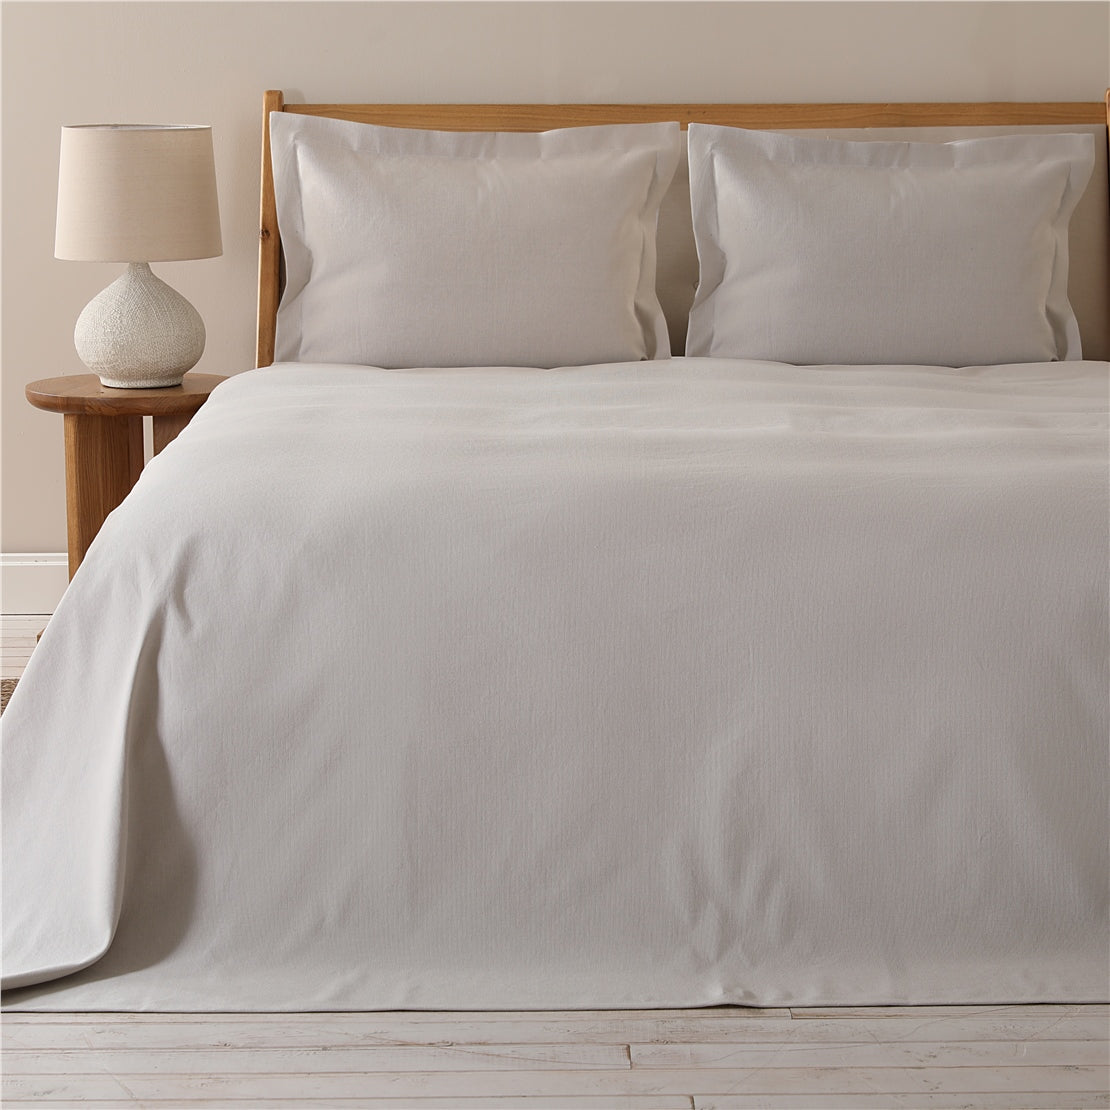 طقم غطاء سرير فريدا مقاس فردي 180 × 250 سم رمادي فاتح من شاكرا